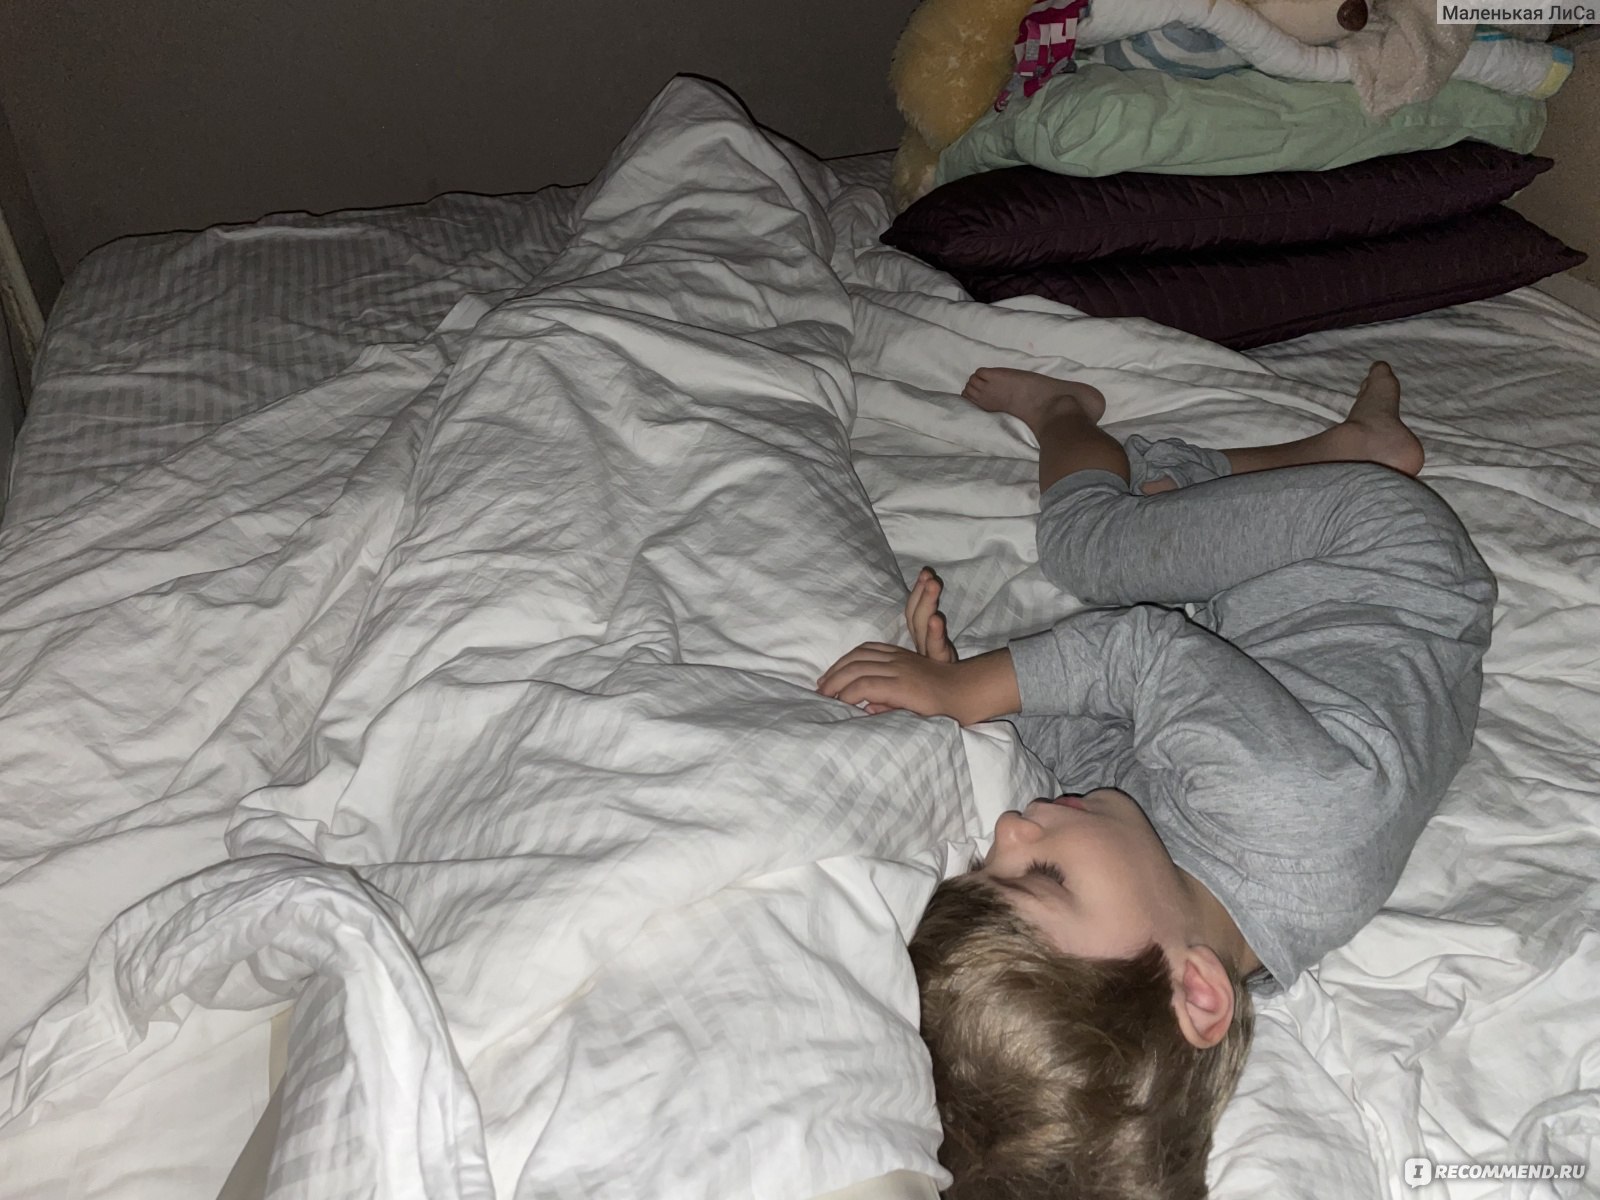 Ребенок 6 месяцев упал с кровати на спину